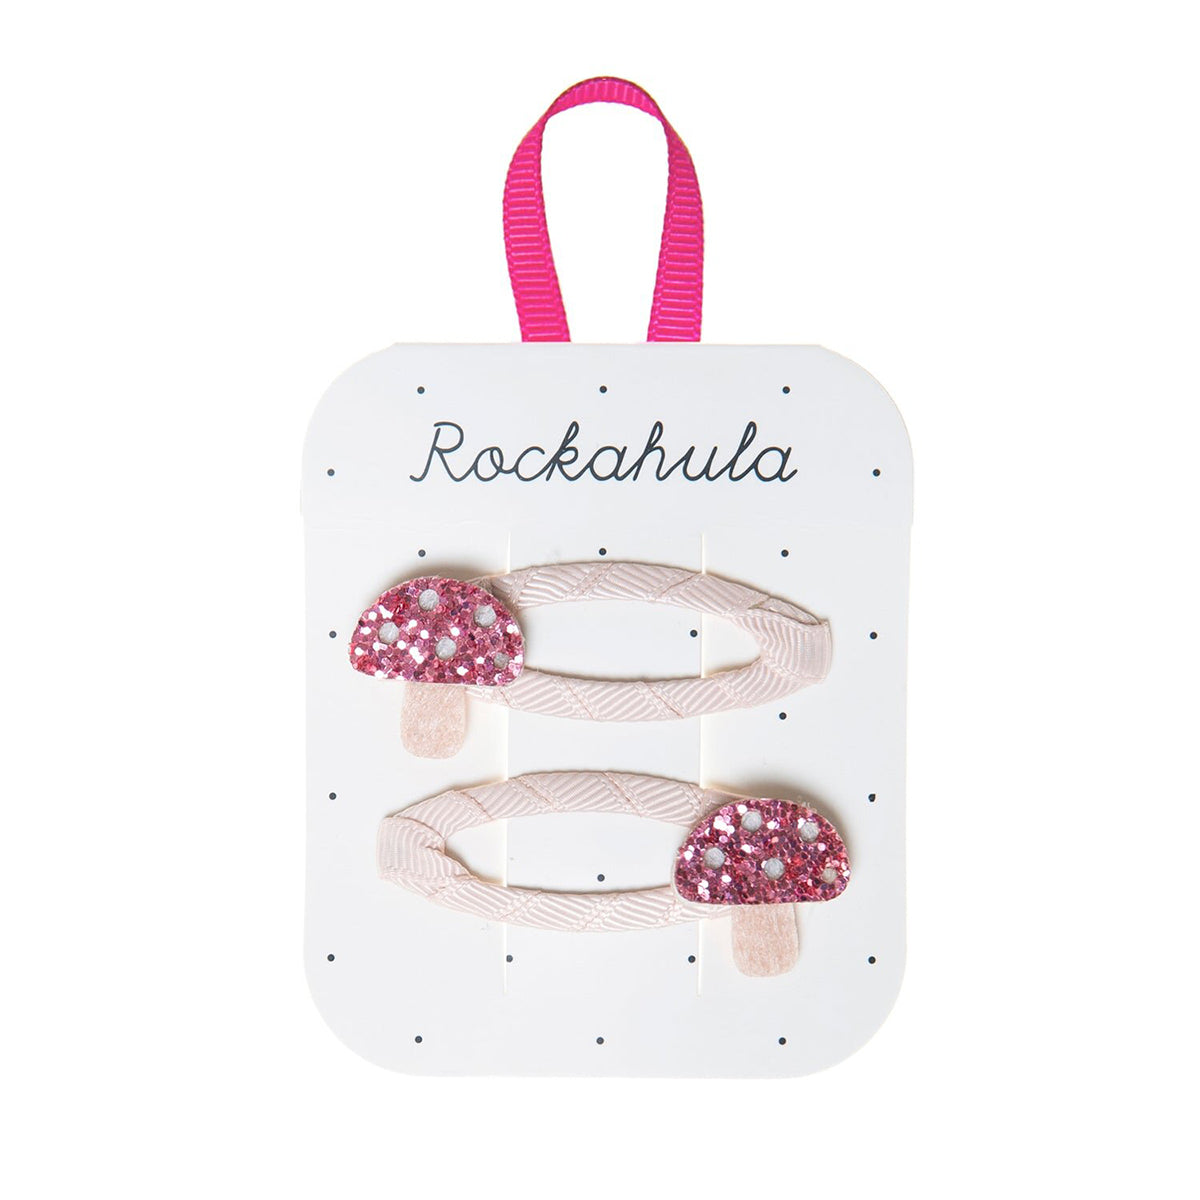 Heb je de little toadstool speldjes van Rockahula al gezien? Glinsterende roze paddenstoeltjes met een viltkleurige stengel stelen de show in de haren van jouw mini. Een hip en vrolijk haaraccessoire! VanZus